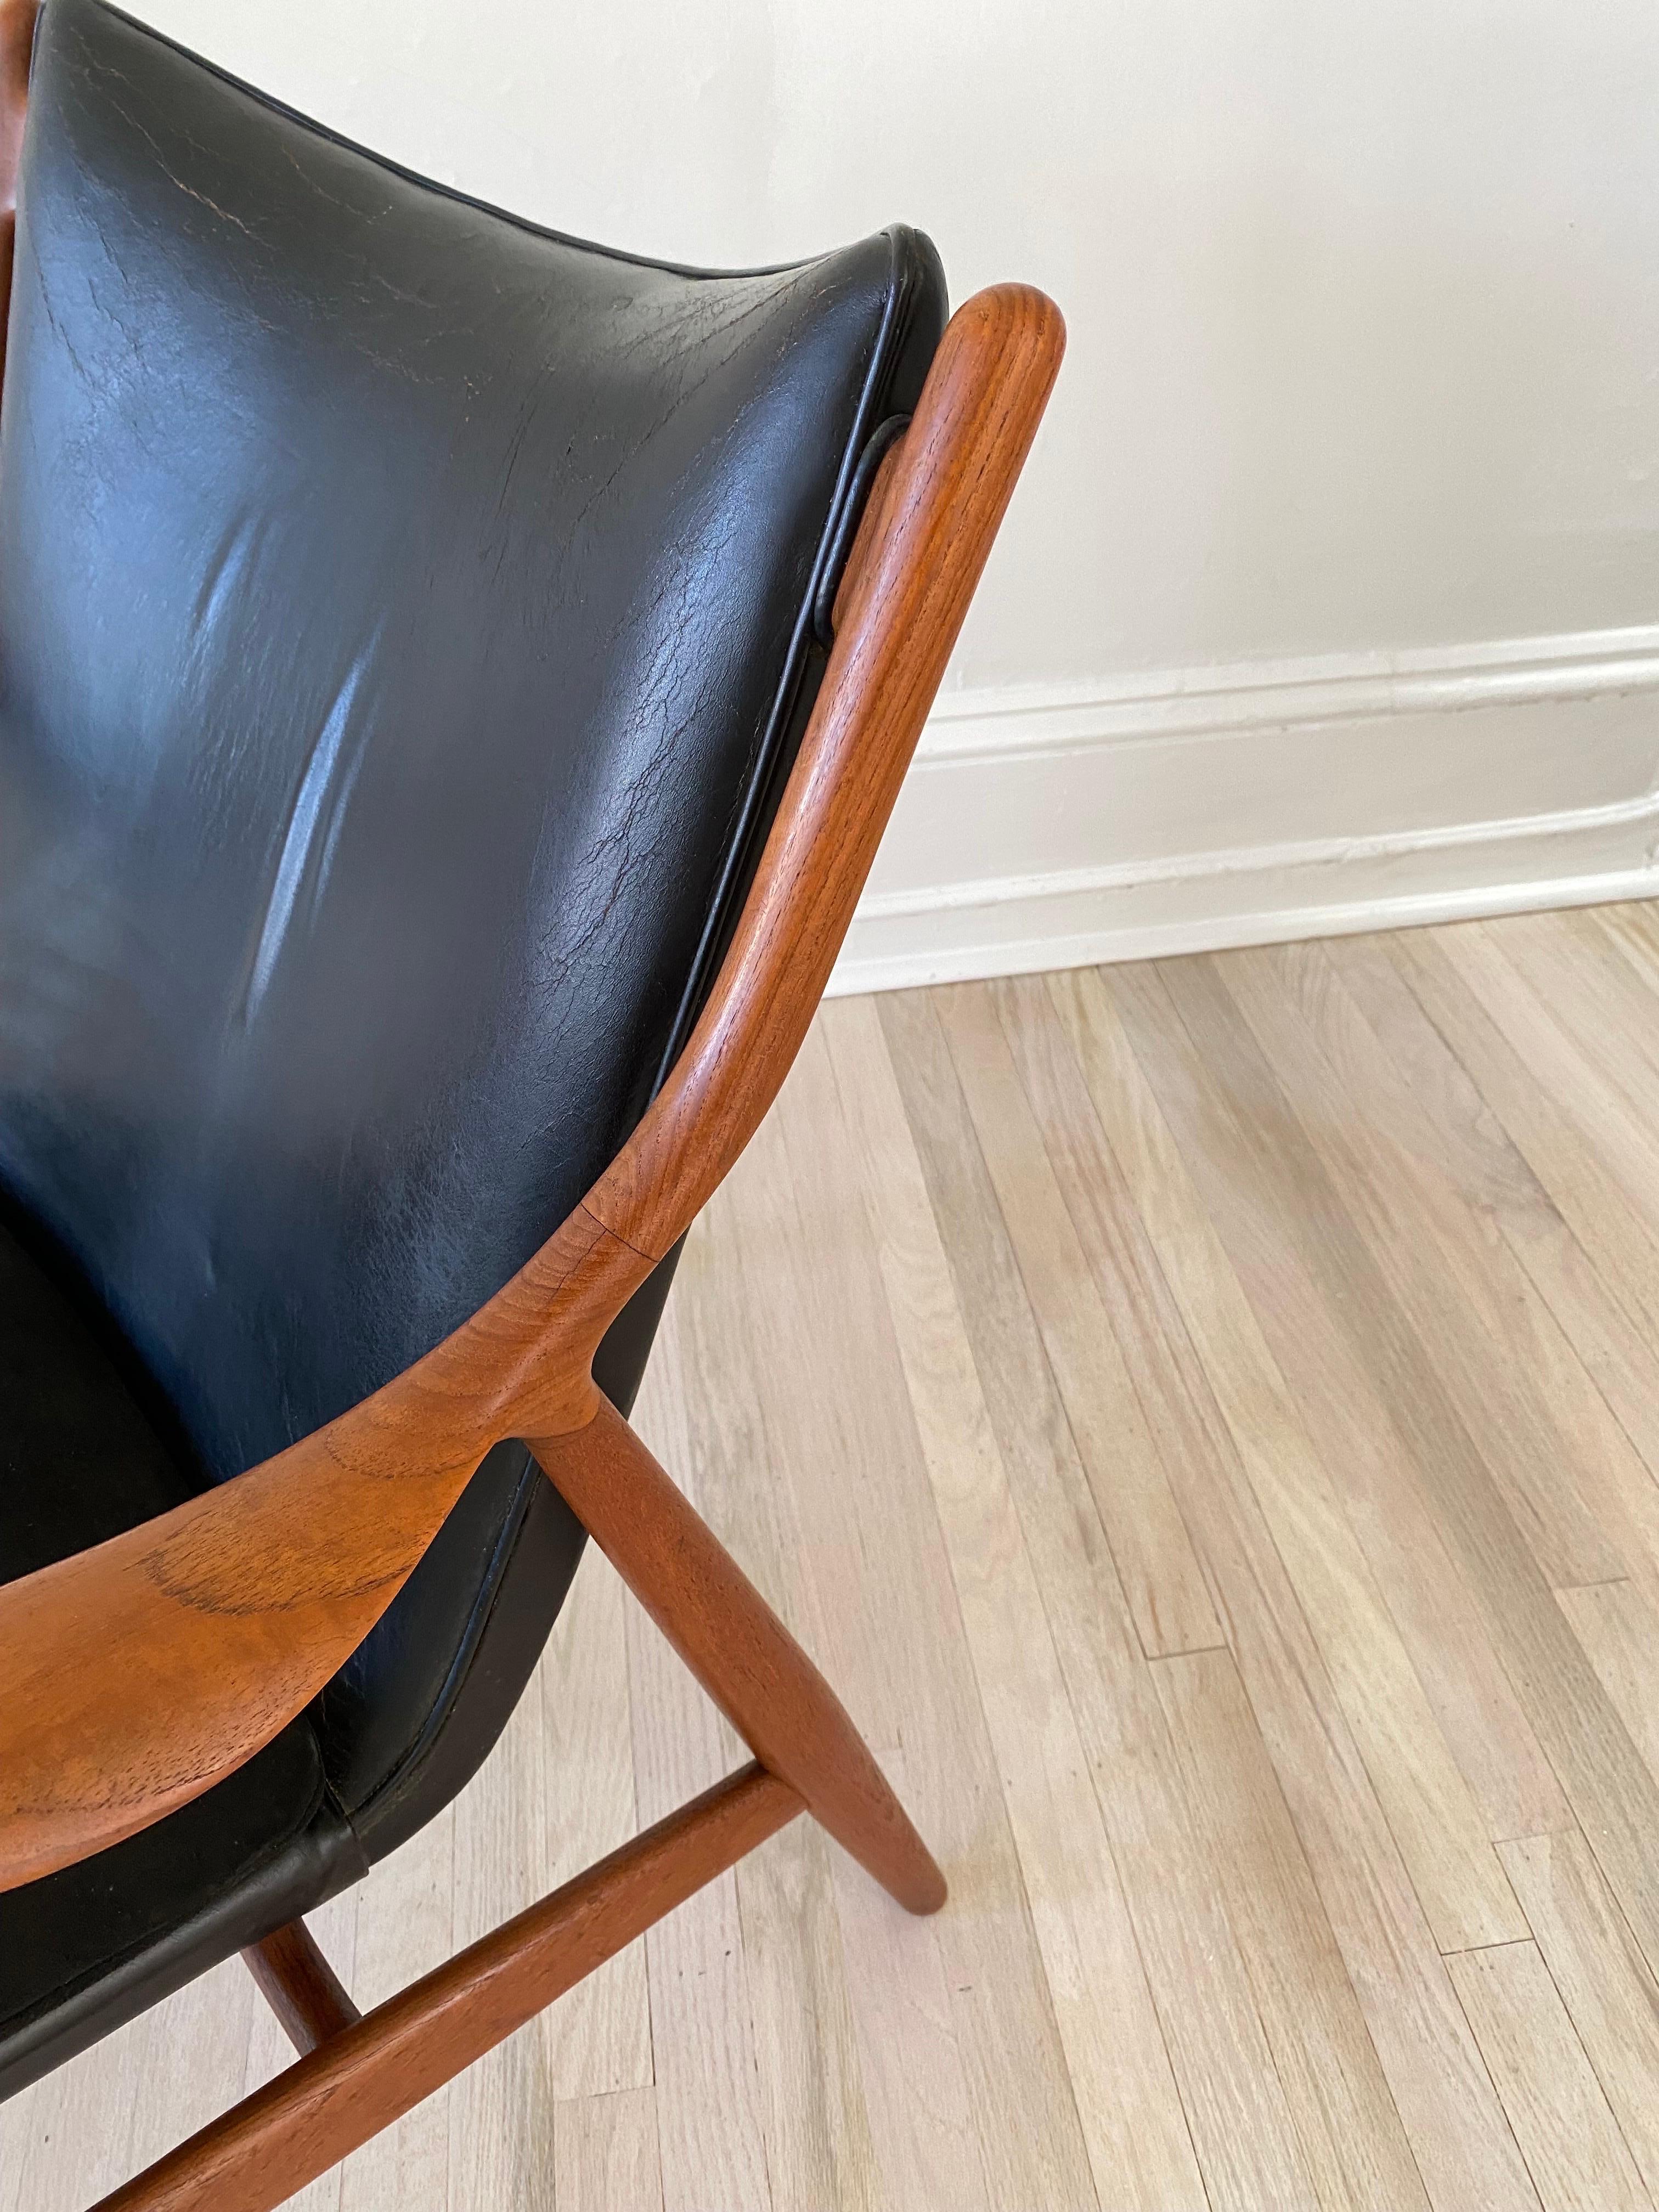 Finn Juhls original NV45 Sessel. Schwarzes Leder mit dem originalen schwarzen Wildledersitzkissen. Er wird oft als der schönste Stuhl bezeichnet, der je entworfen wurde, und ist wahrscheinlich Juhls Meisterwerk! Der Stuhl behält seine ursprünglichen